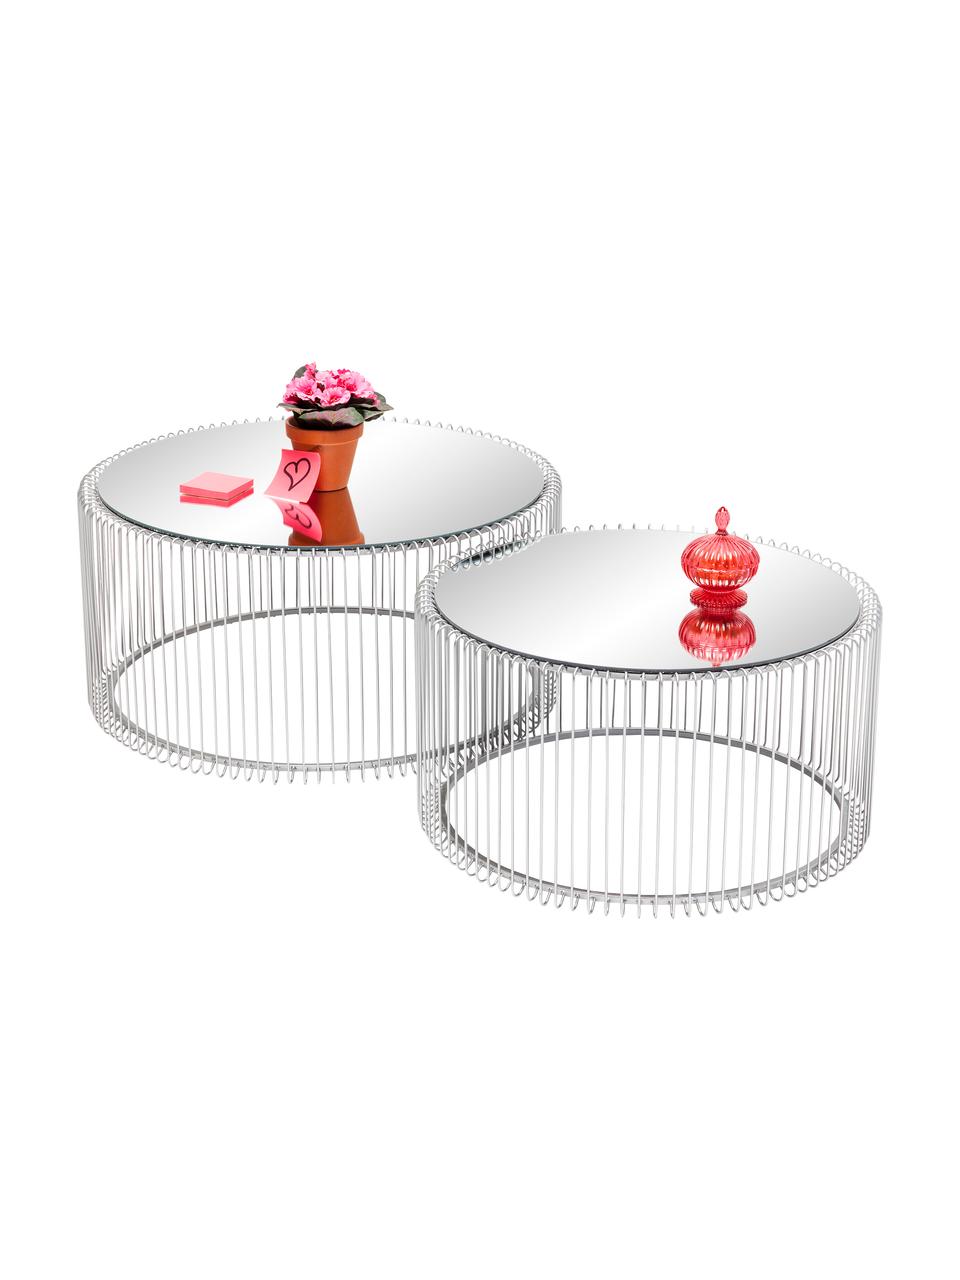 Couchtisch-Set Wire mit Glasplatte, 2-tlg., Gestell: Metall, pulverbeschichtet, Tischplatte: Sicherheitsglas, foliert, Chromfarben, Set mit verschiedenen Größen